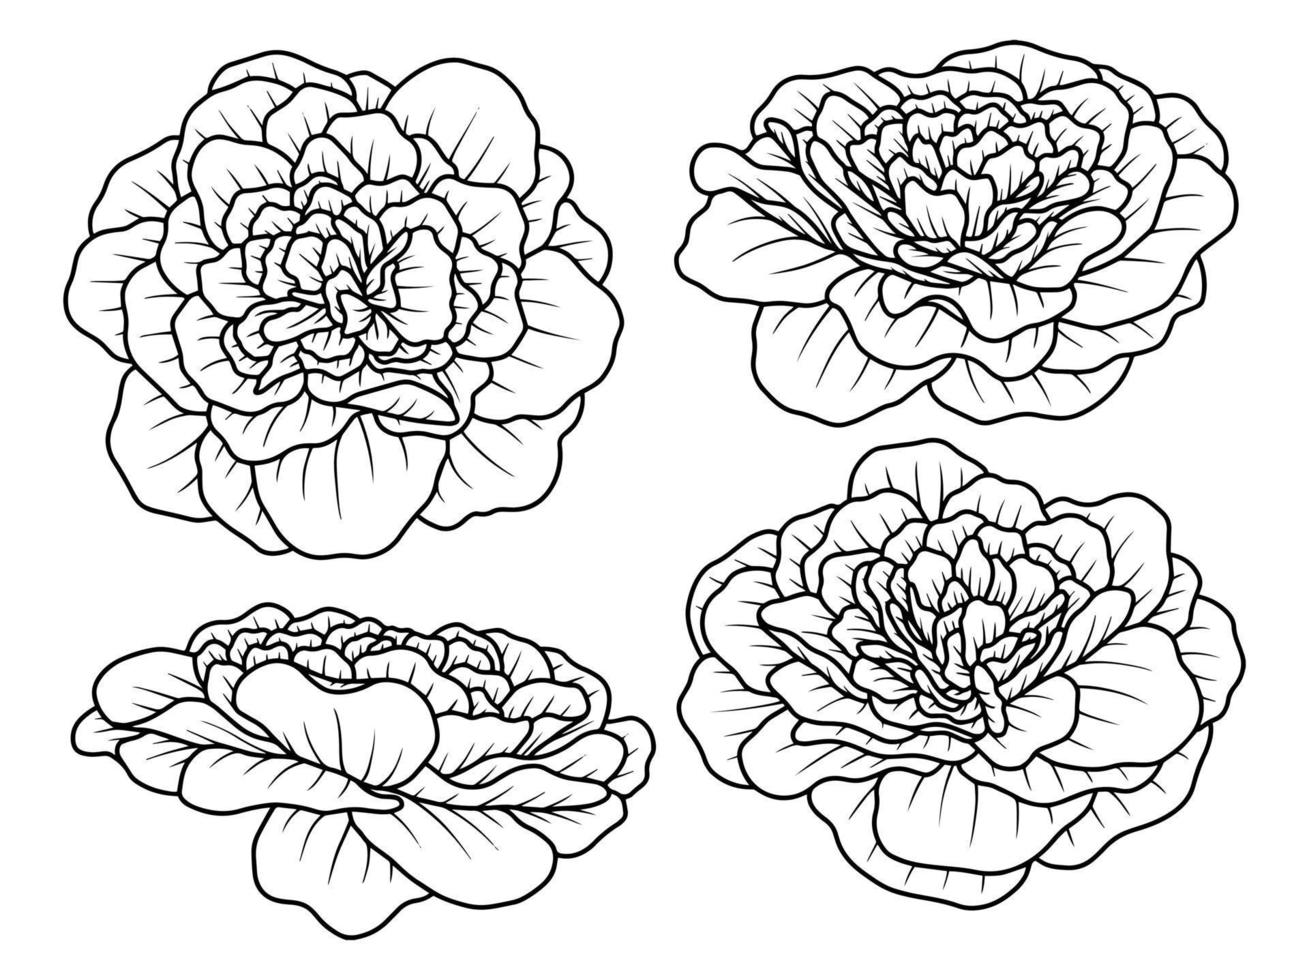 rosenblume handgezeichnete skizzenlinie kunstillustration vektor